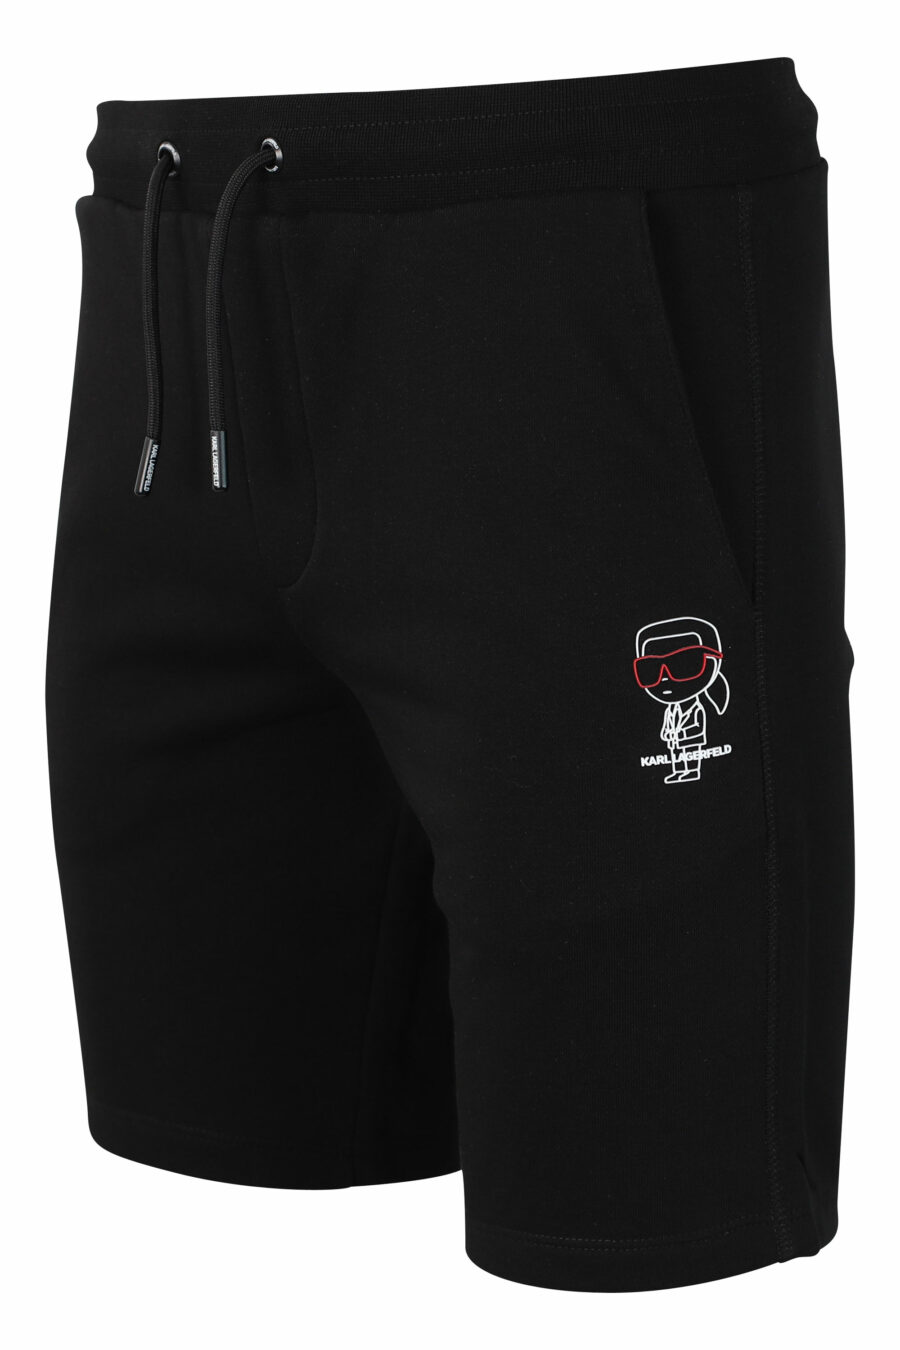 Pantalón de chándal negro corto con logo en silueta blanco - IMG 9893